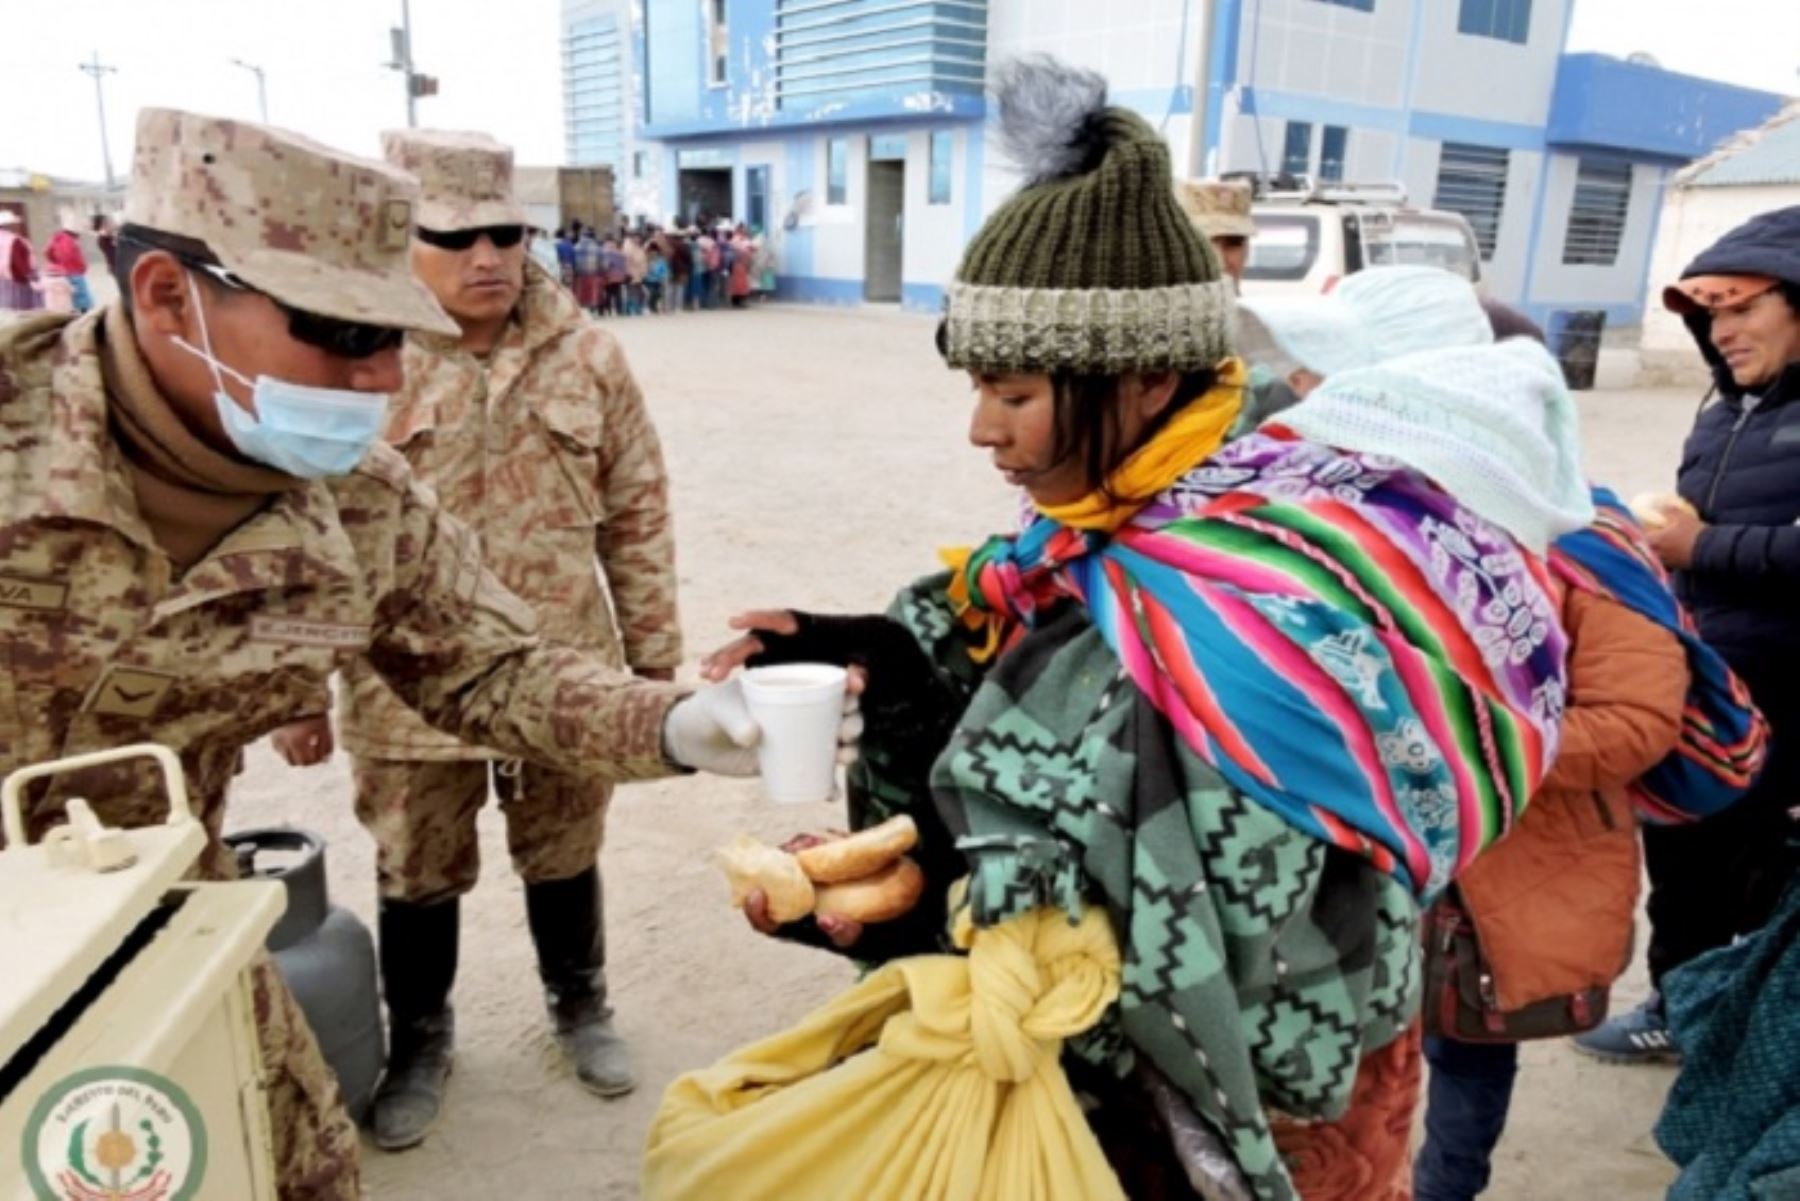 Efectivos del Ejército se trasladaron al centro poblado de Ancomarca, ubicado a 4,200 metros sobre el nivel del mar, en el distrito de Palca, provincia y región Tacna, donde entregaron más de cinco toneladas de prendas de abrigo a los pobladores afectados por las intensas heladas que se reportan en esta zona altoandina del país.